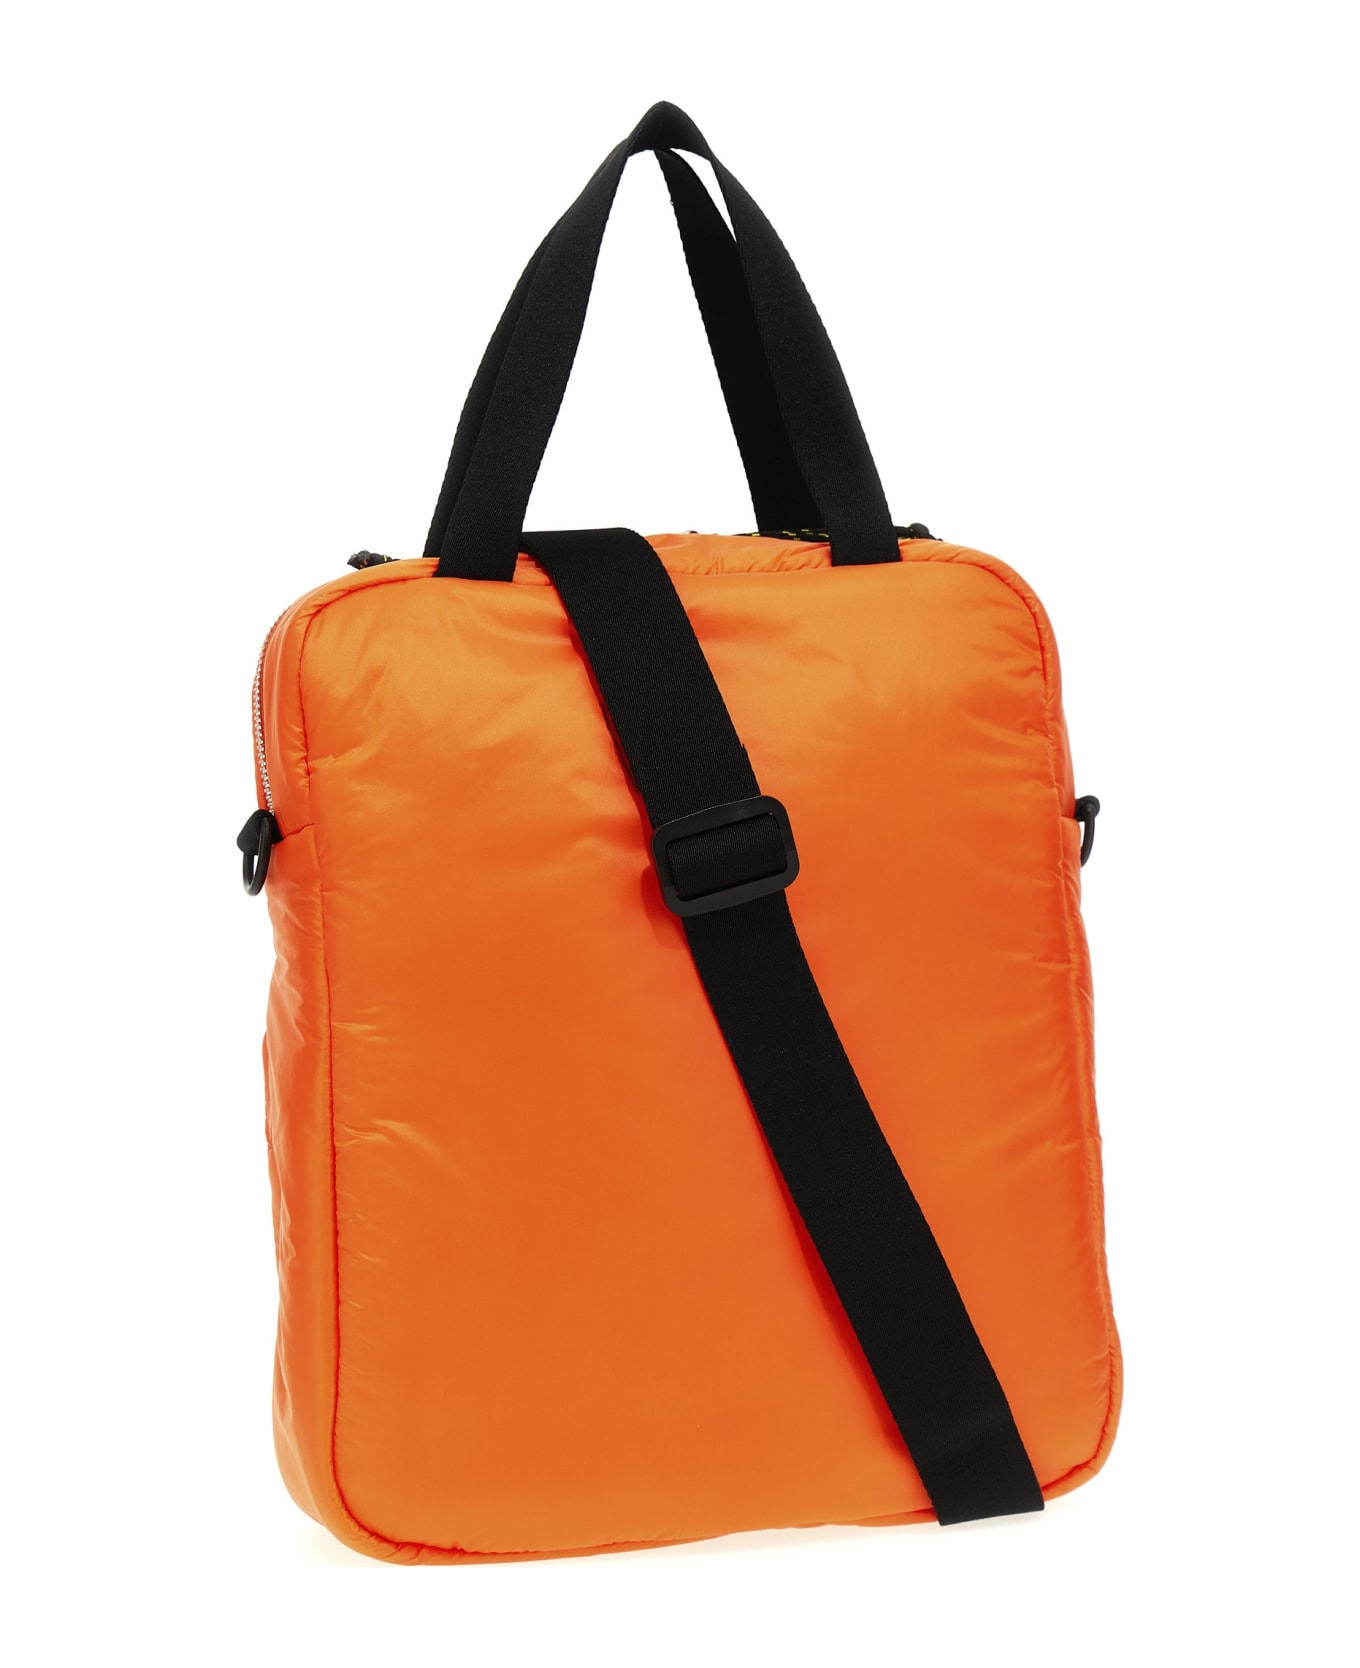 A.P.C. Puffy Shopping Bag - Orange